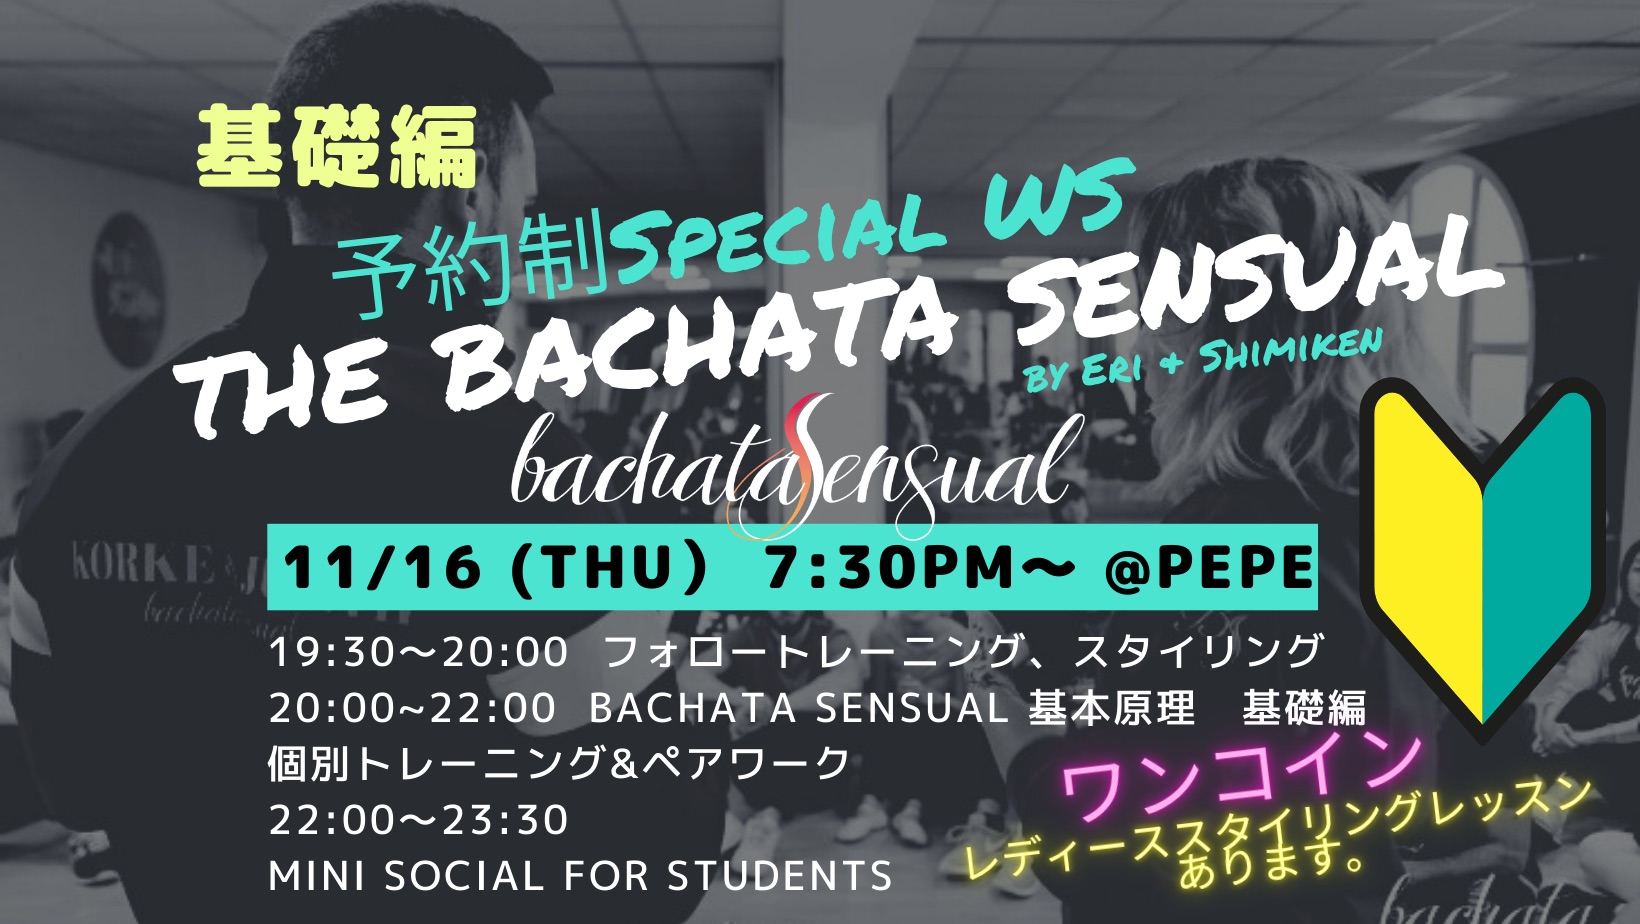 基礎編?予約制The Bachata Sensual Special WS?